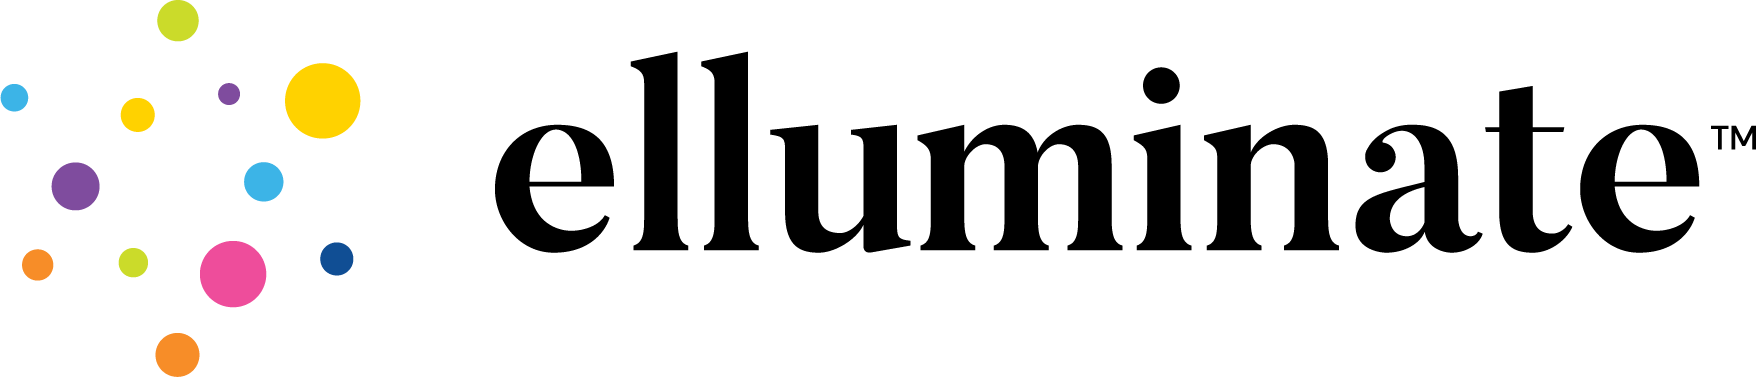 elluminate logo